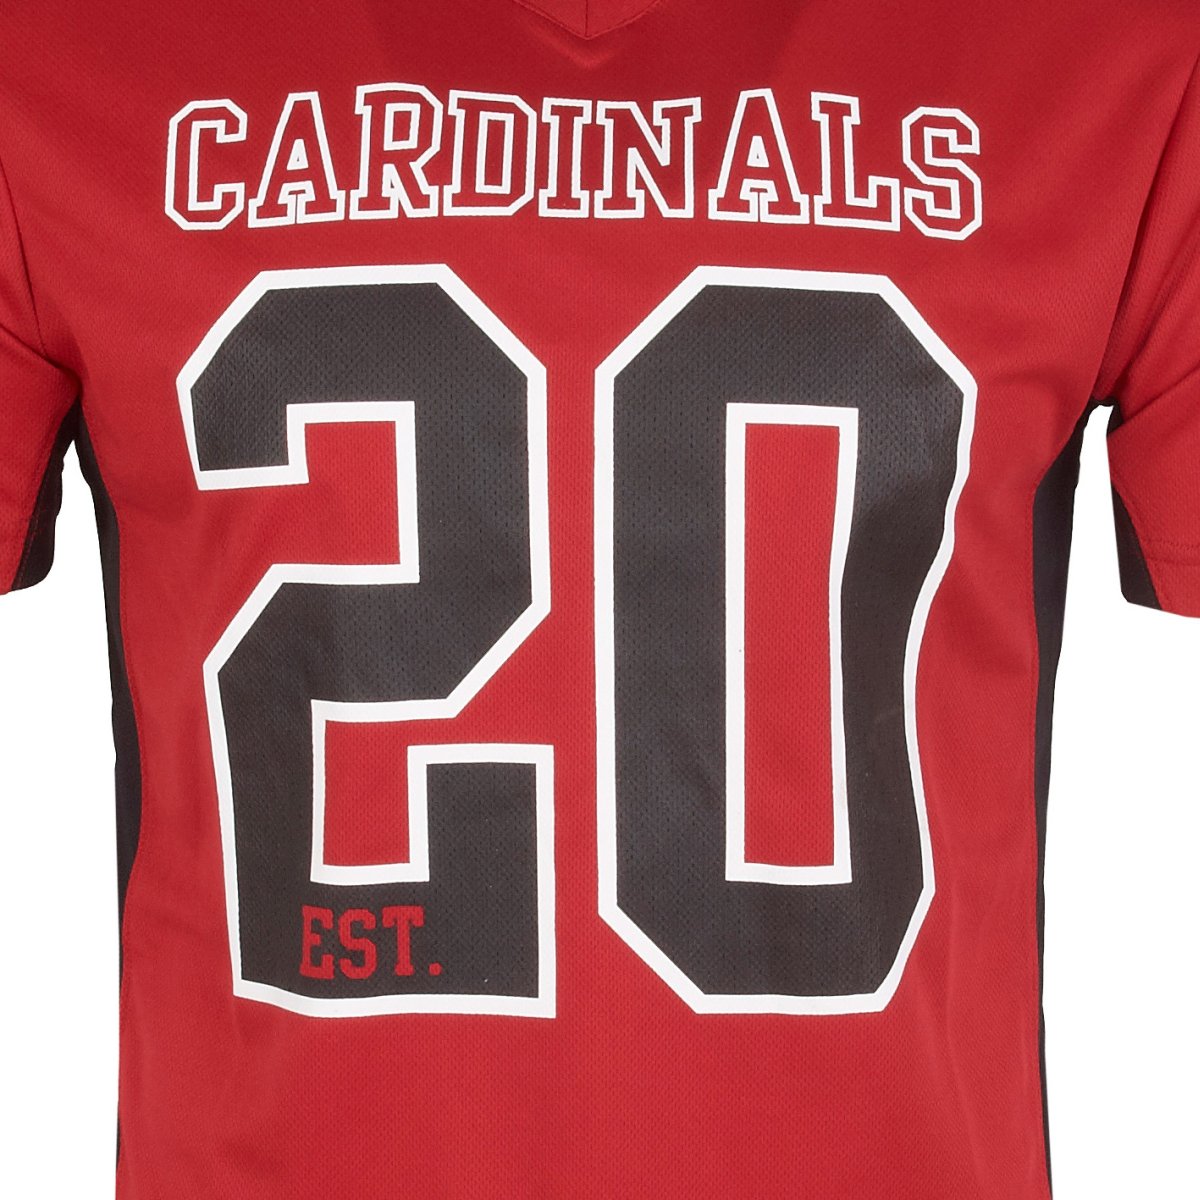 cardinals jersey shirt